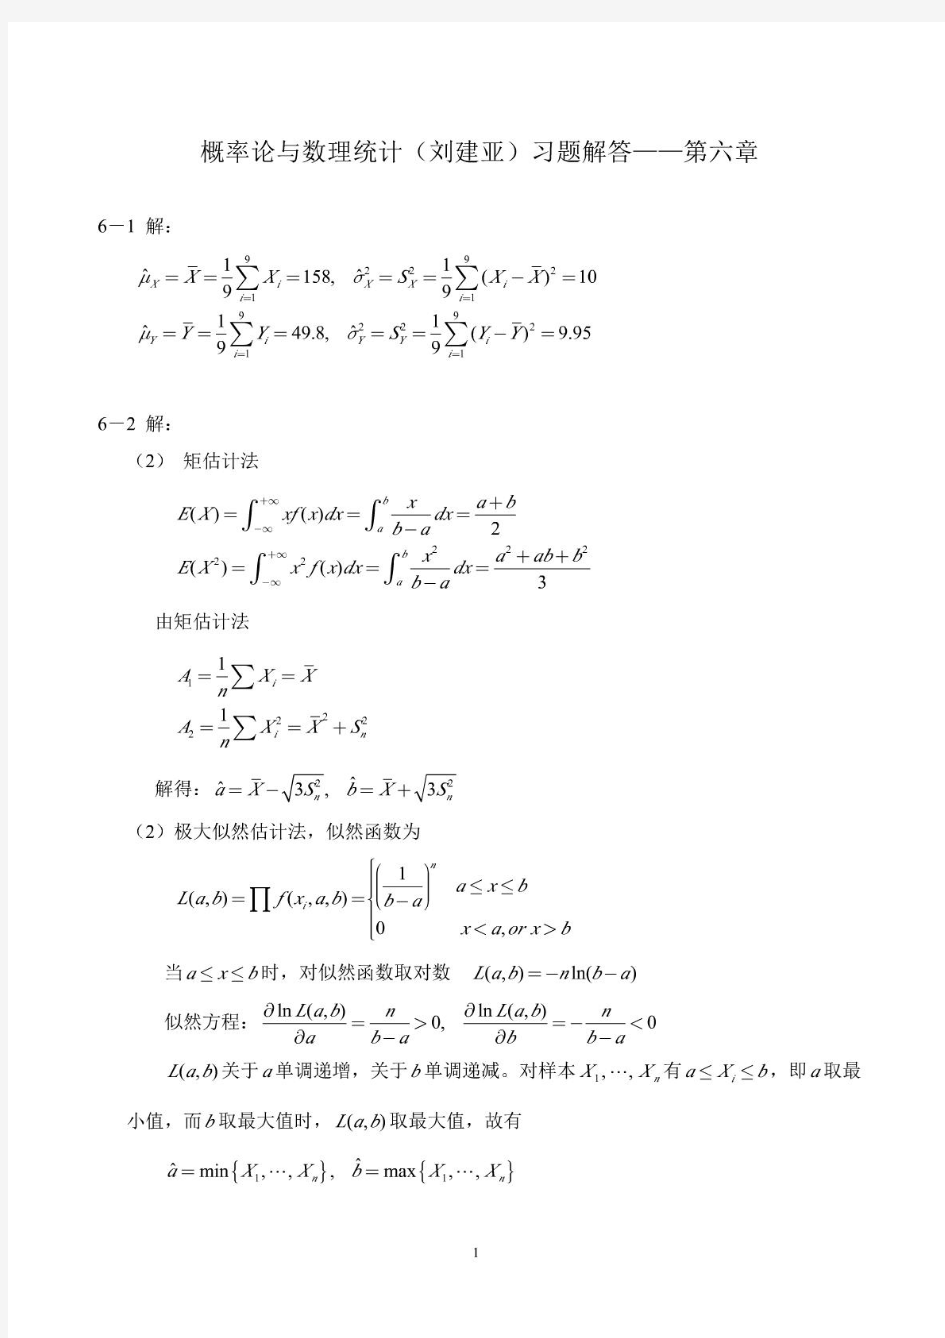 概率论与数理统计(刘建亚)习题解答第6章(无乱码))